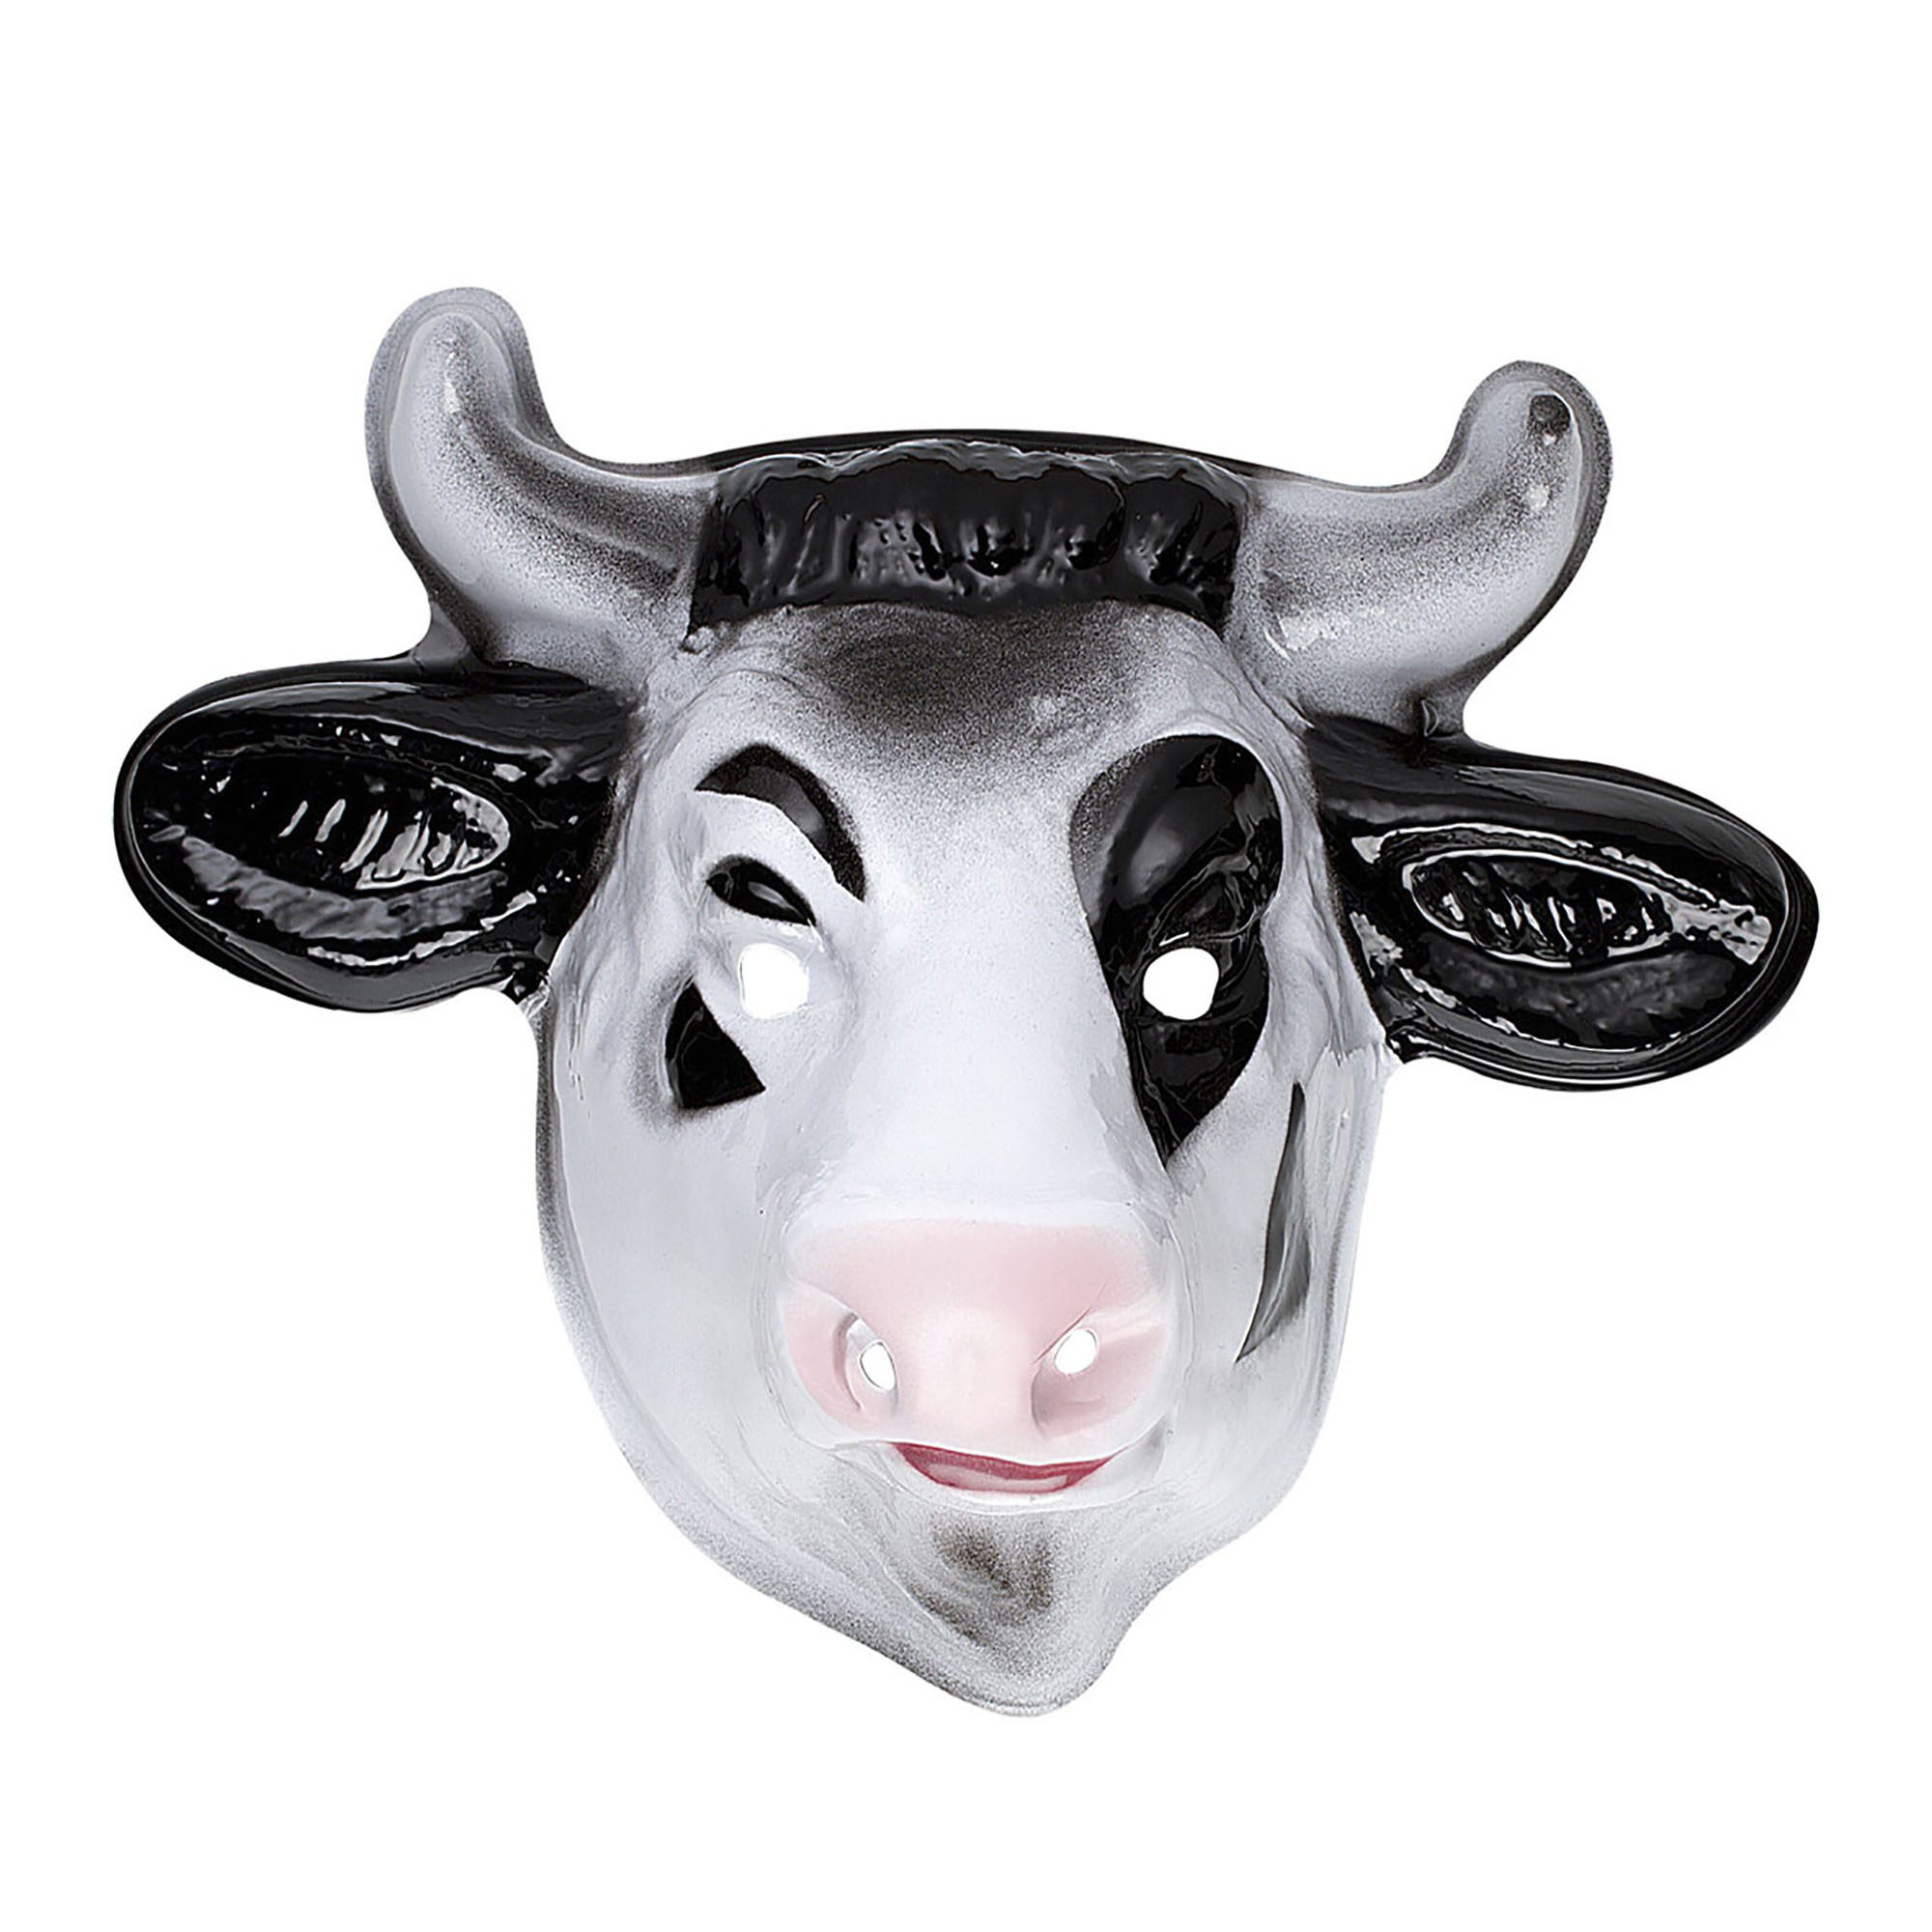 Plastic kinder masker koe